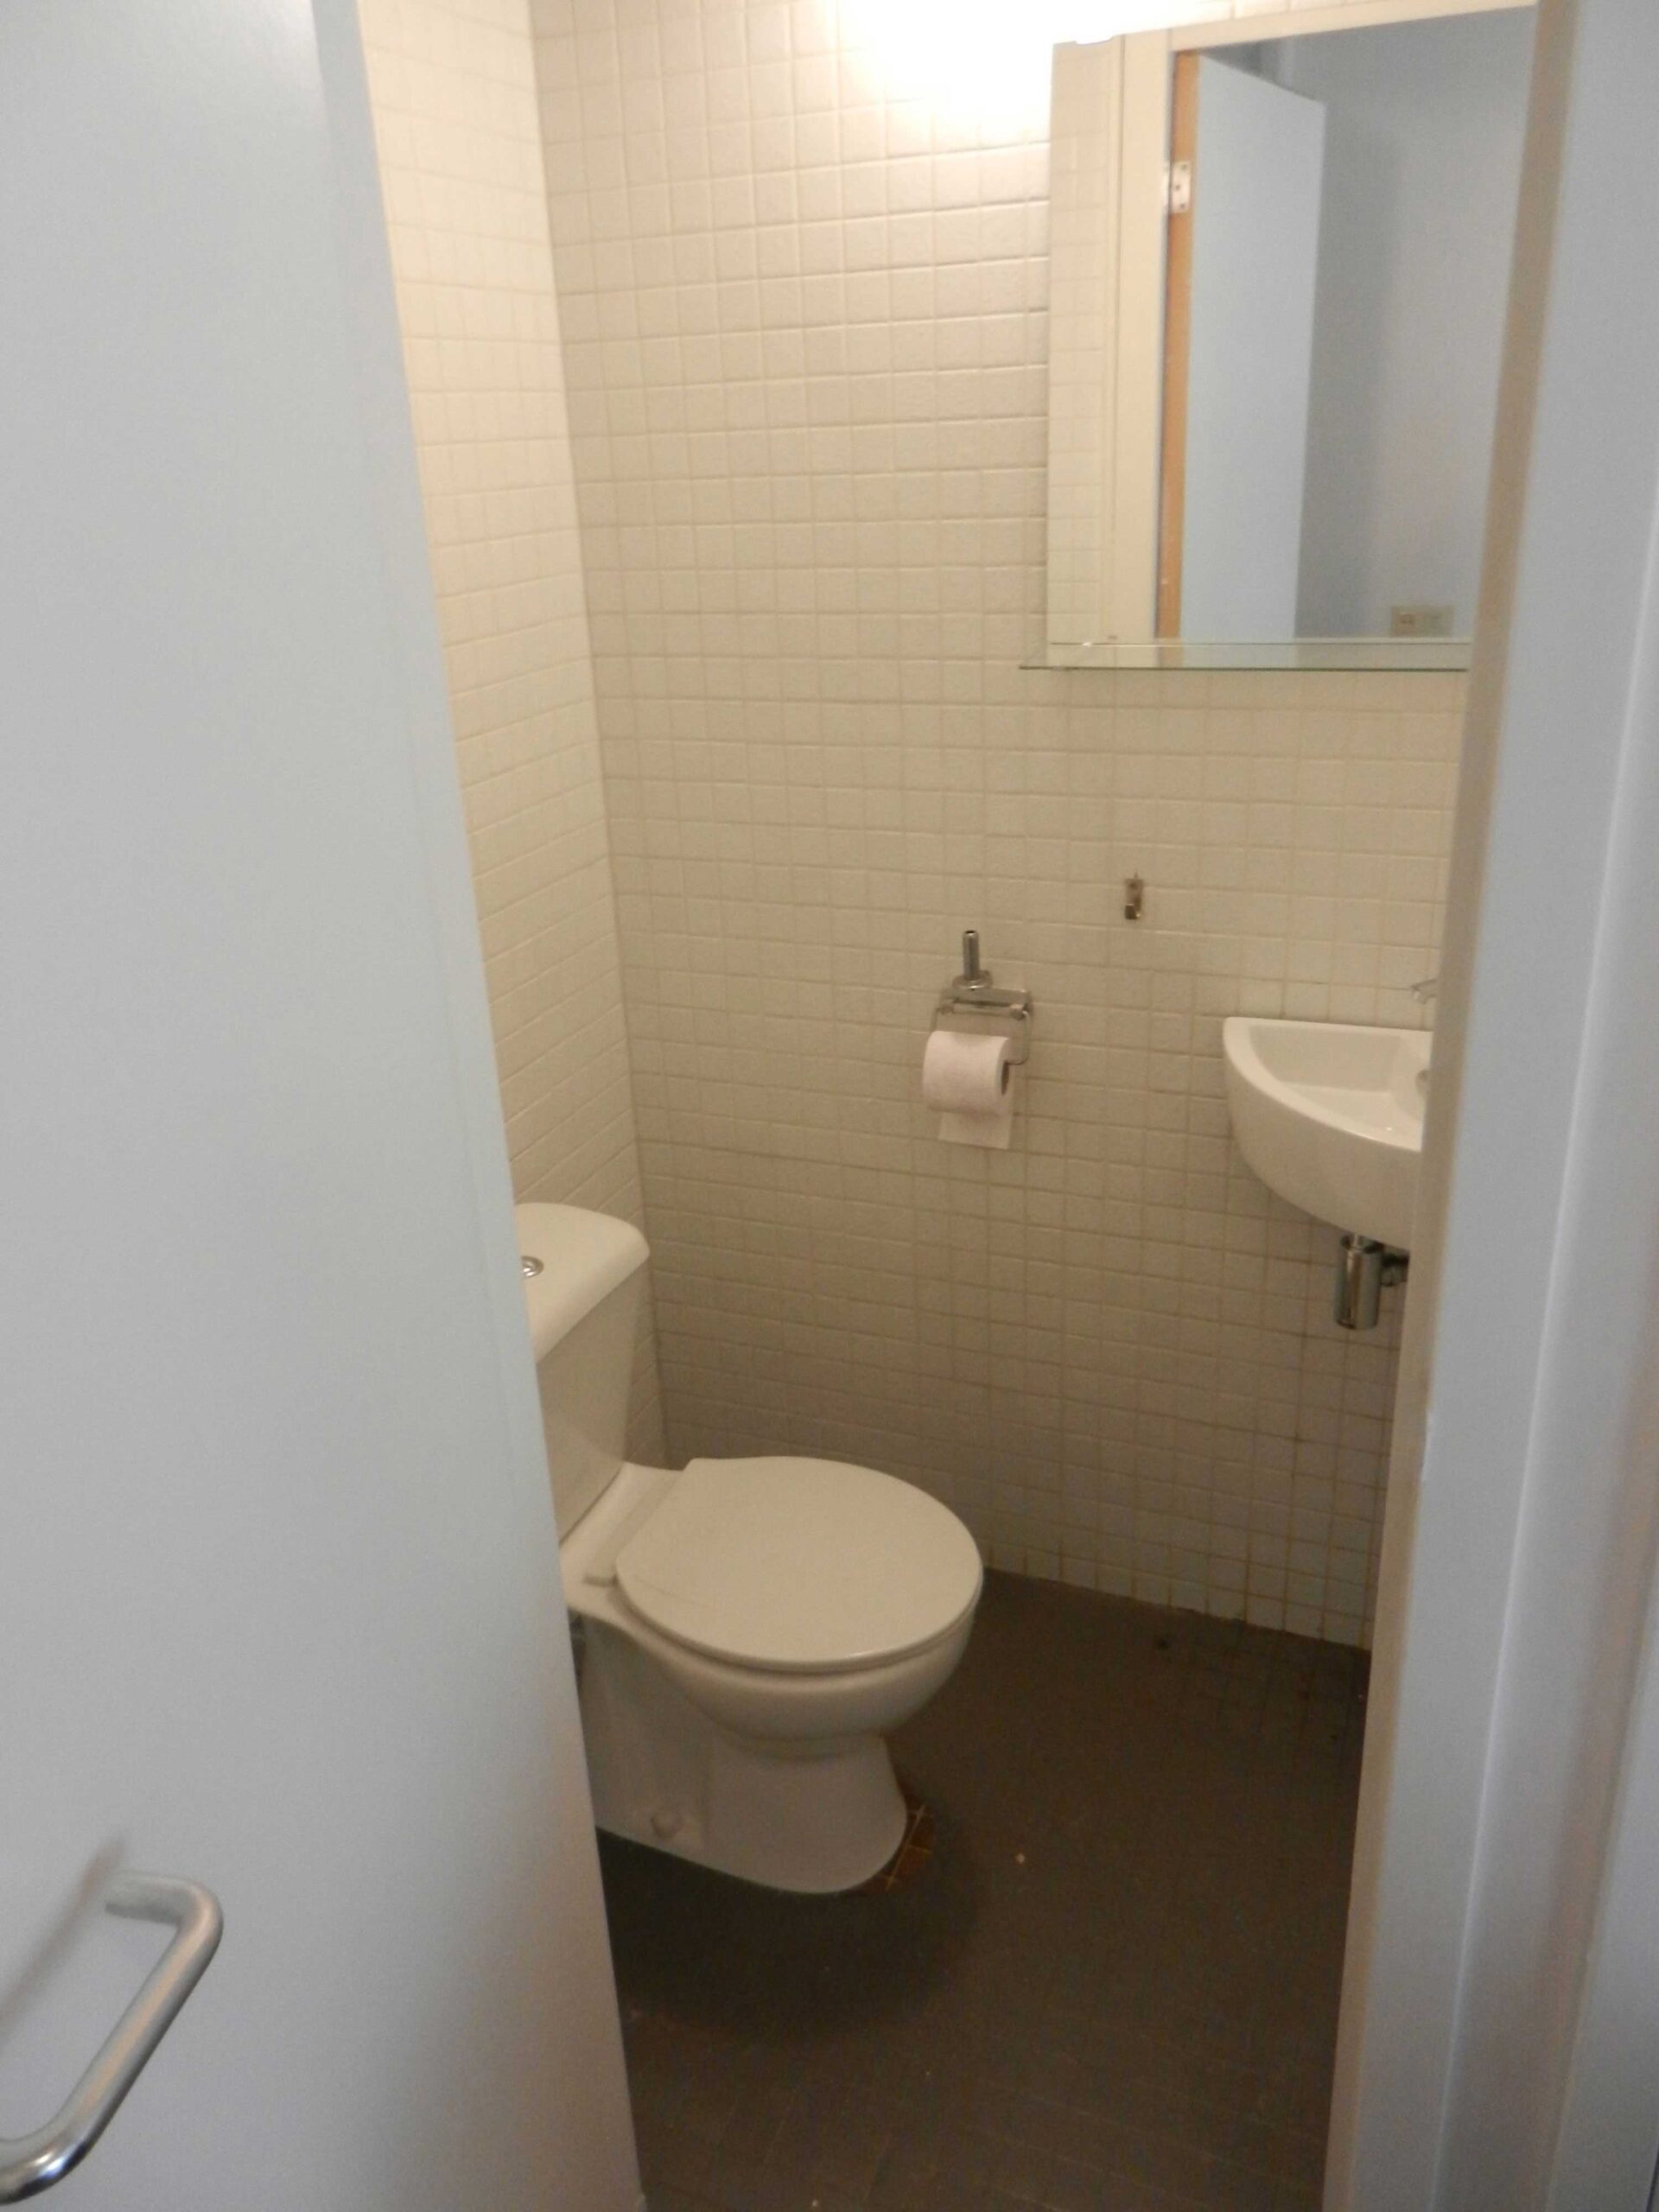 toilet upgrade klusbedrijf van kester